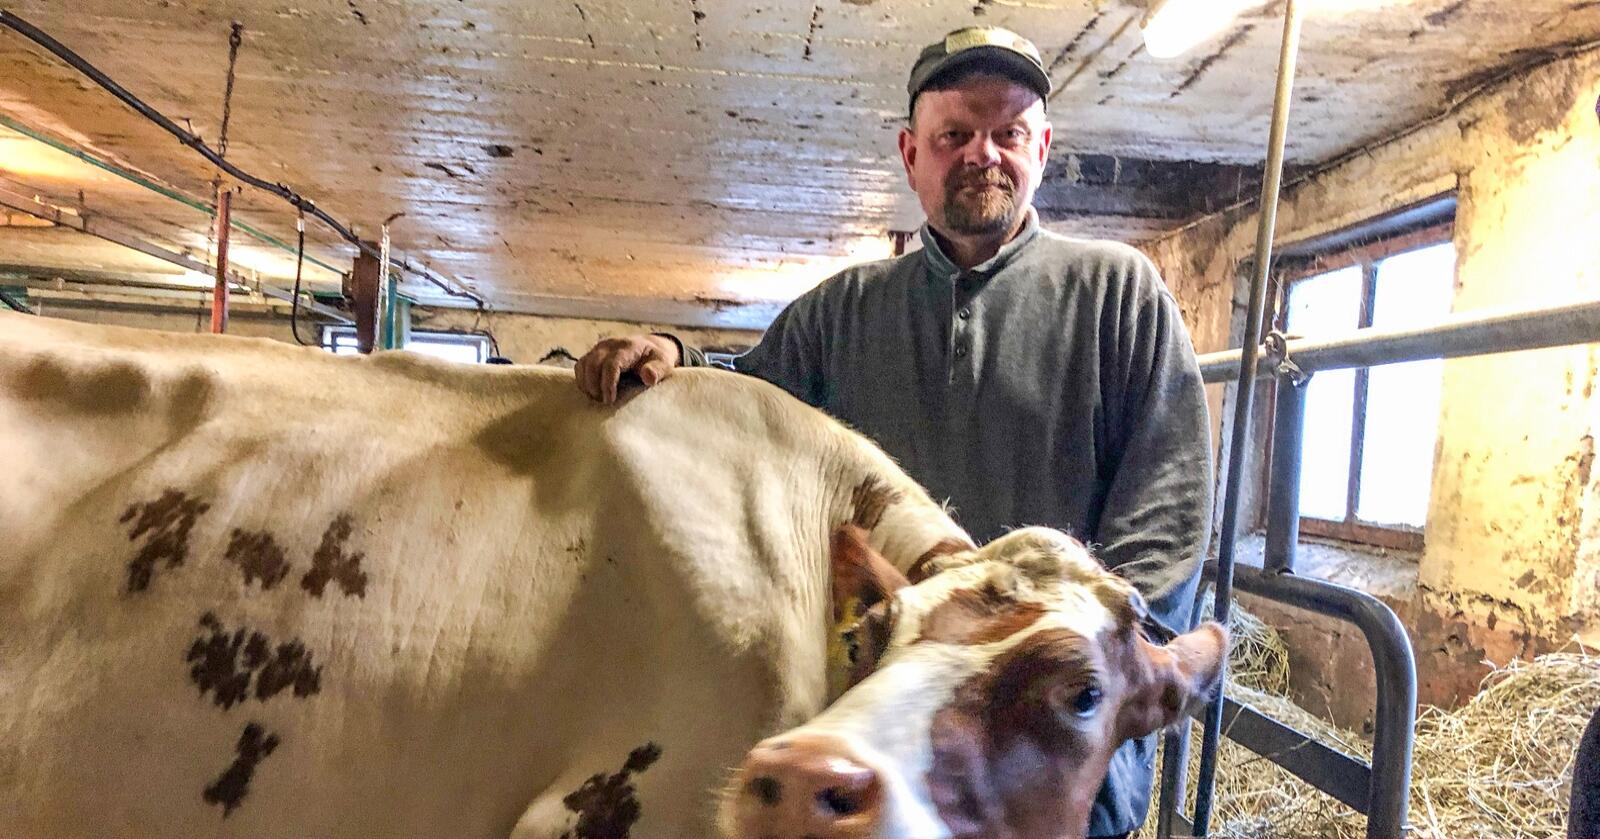 Tøffere: Ole Håvard Lerberg har drevet med melk og korn på Romerike i over 15 år. Han opplever at det har blitt tøffere og tøffere å være bonde, spesielt når alt er så usikkert rundt økonomi. (Foto: Privat)